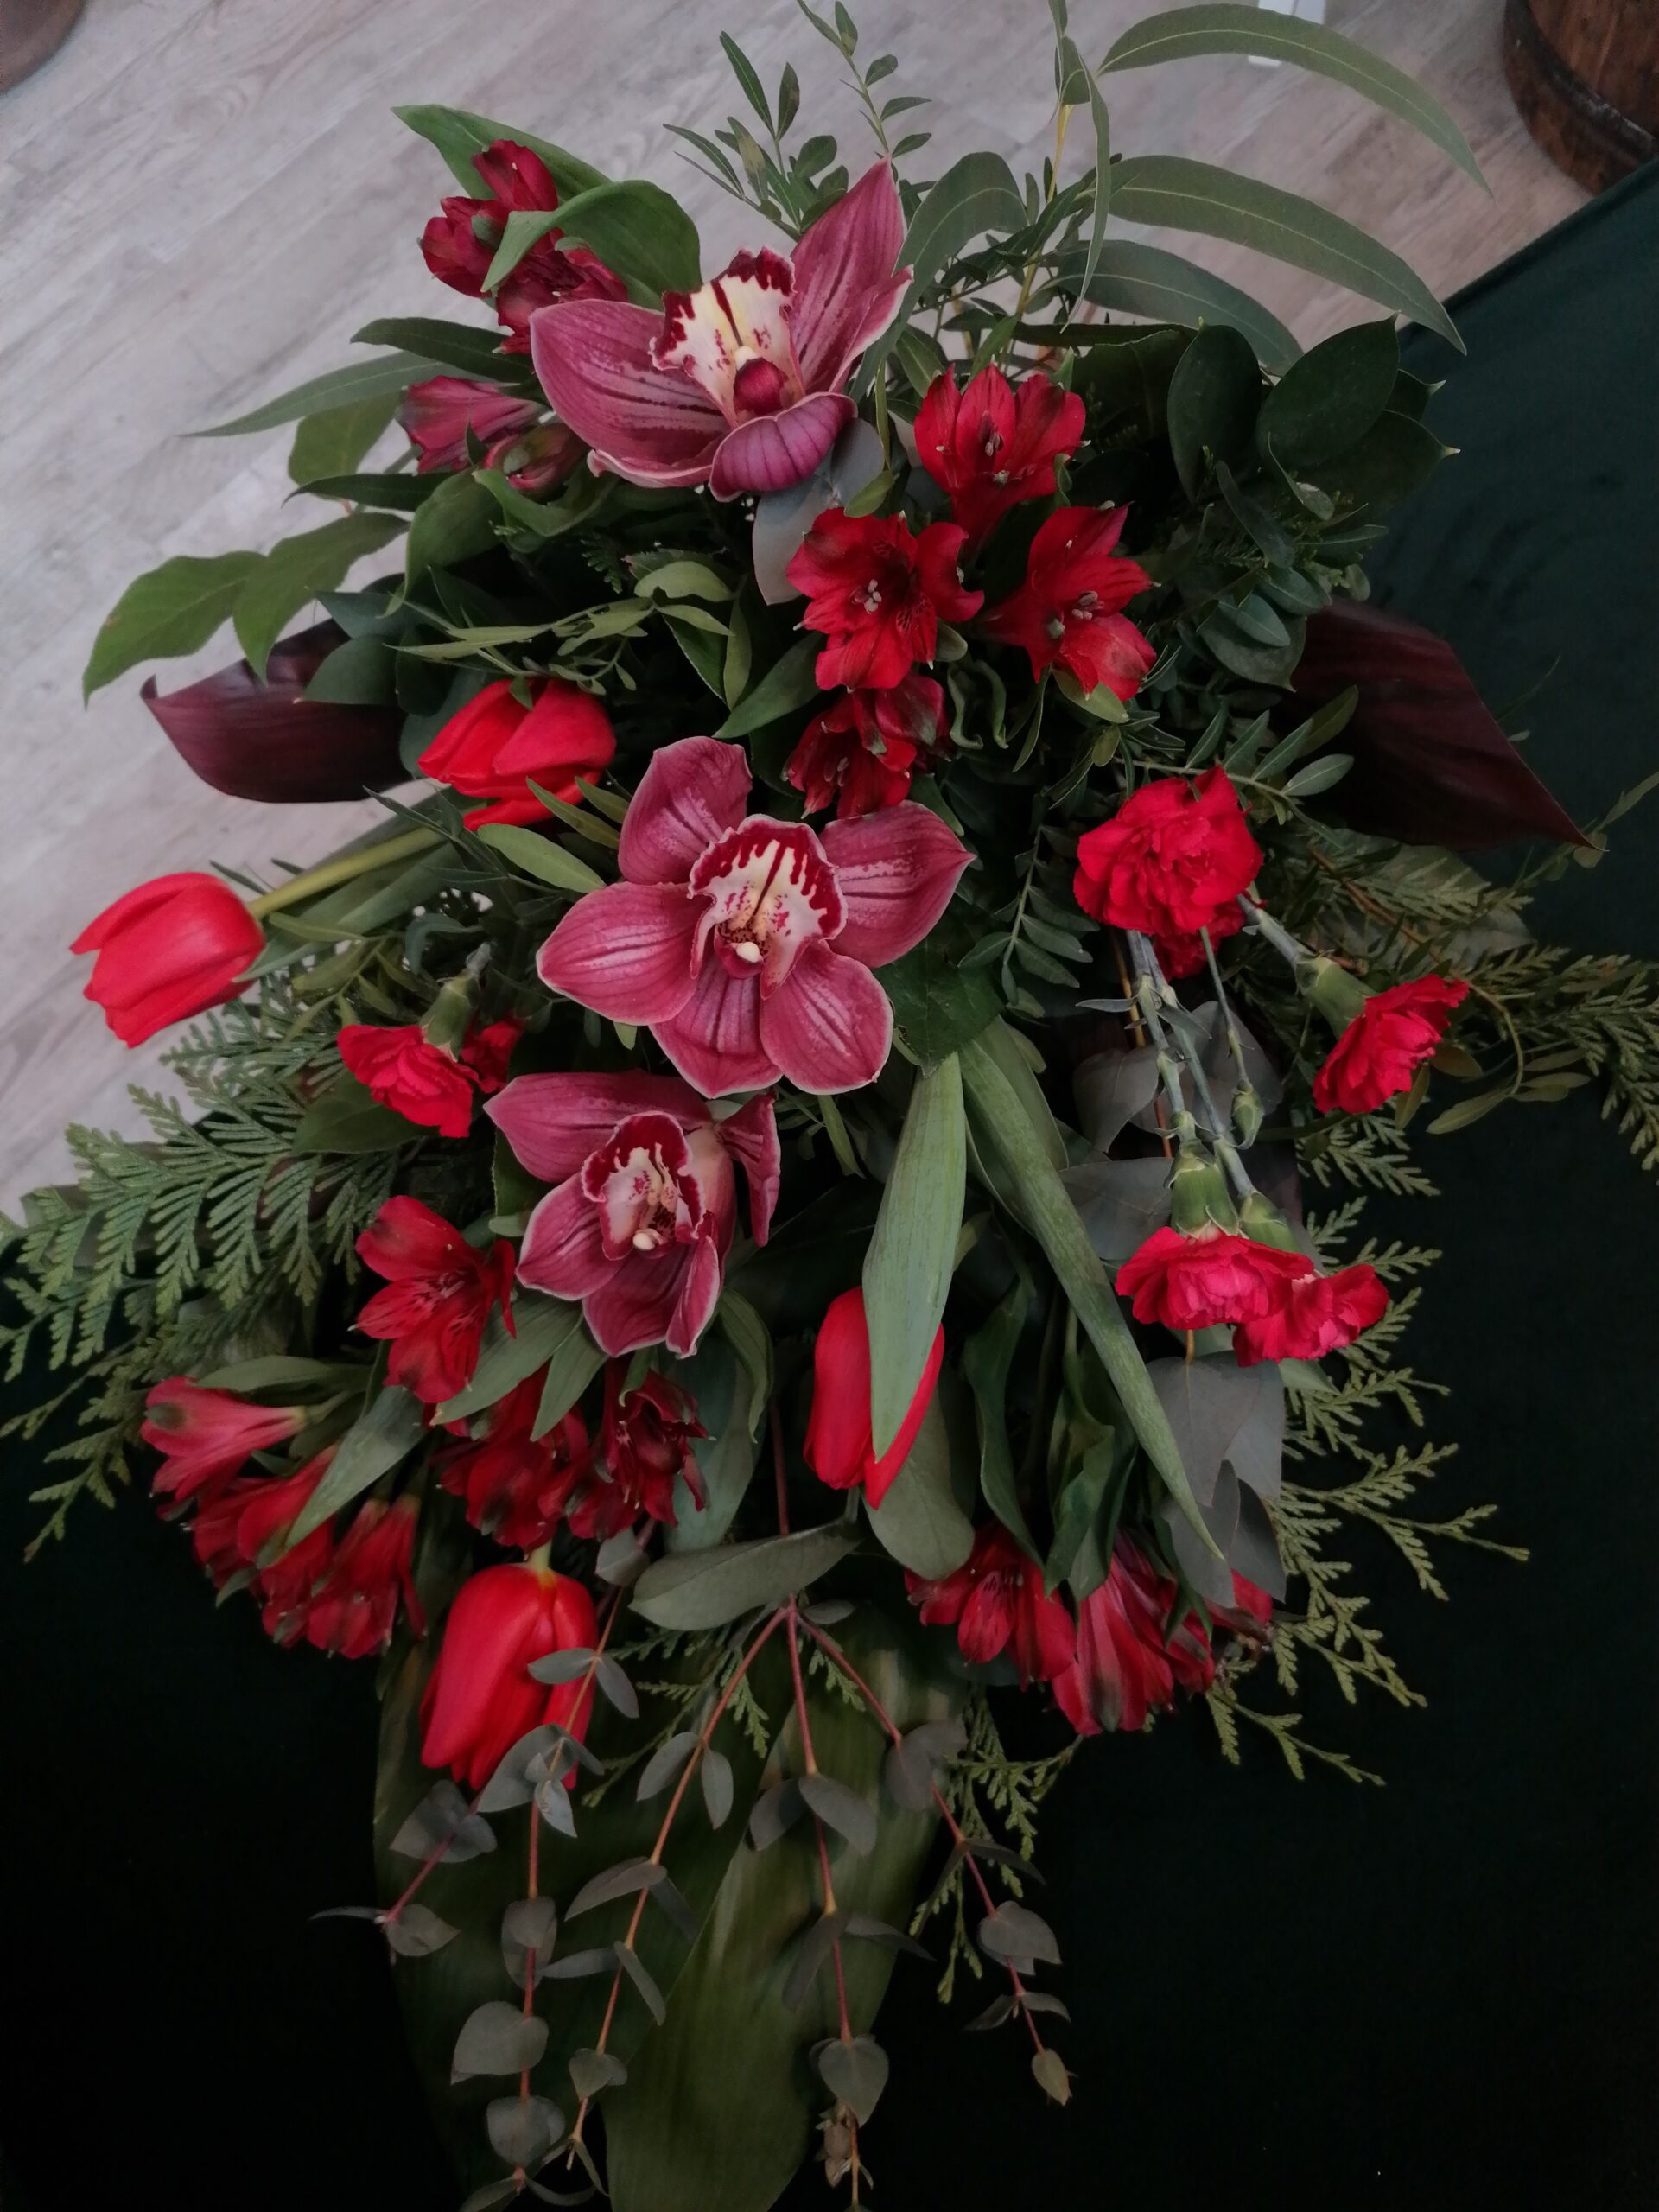 Букет в червоній гамі - це елегантний прощальний букет для чоловіків і жінок. Він складається з орхідей, тюльпанів, альстромерій та гвоздик в оточенні різноманітної зелені.